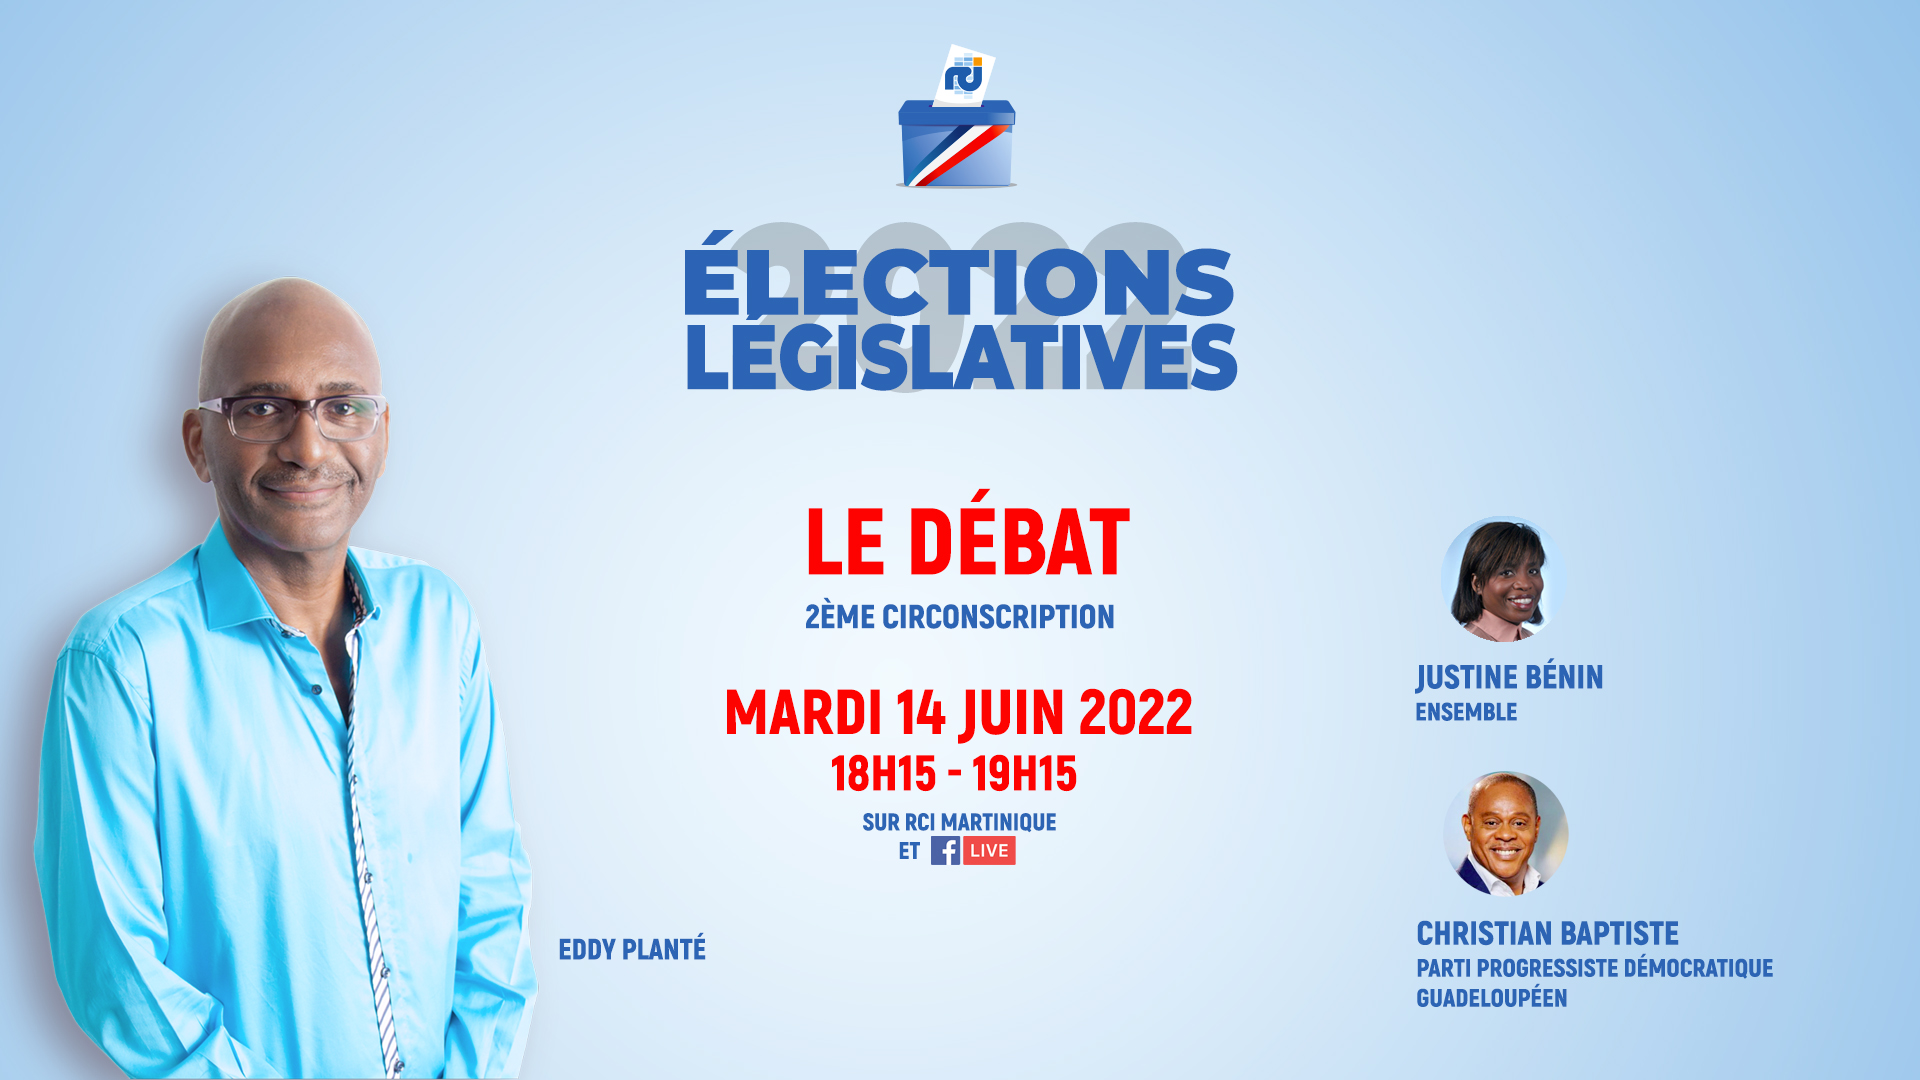     [LIVE] Législatives 2022 : suivez le débat RCI entre Justine Bénin et Christian Baptiste

